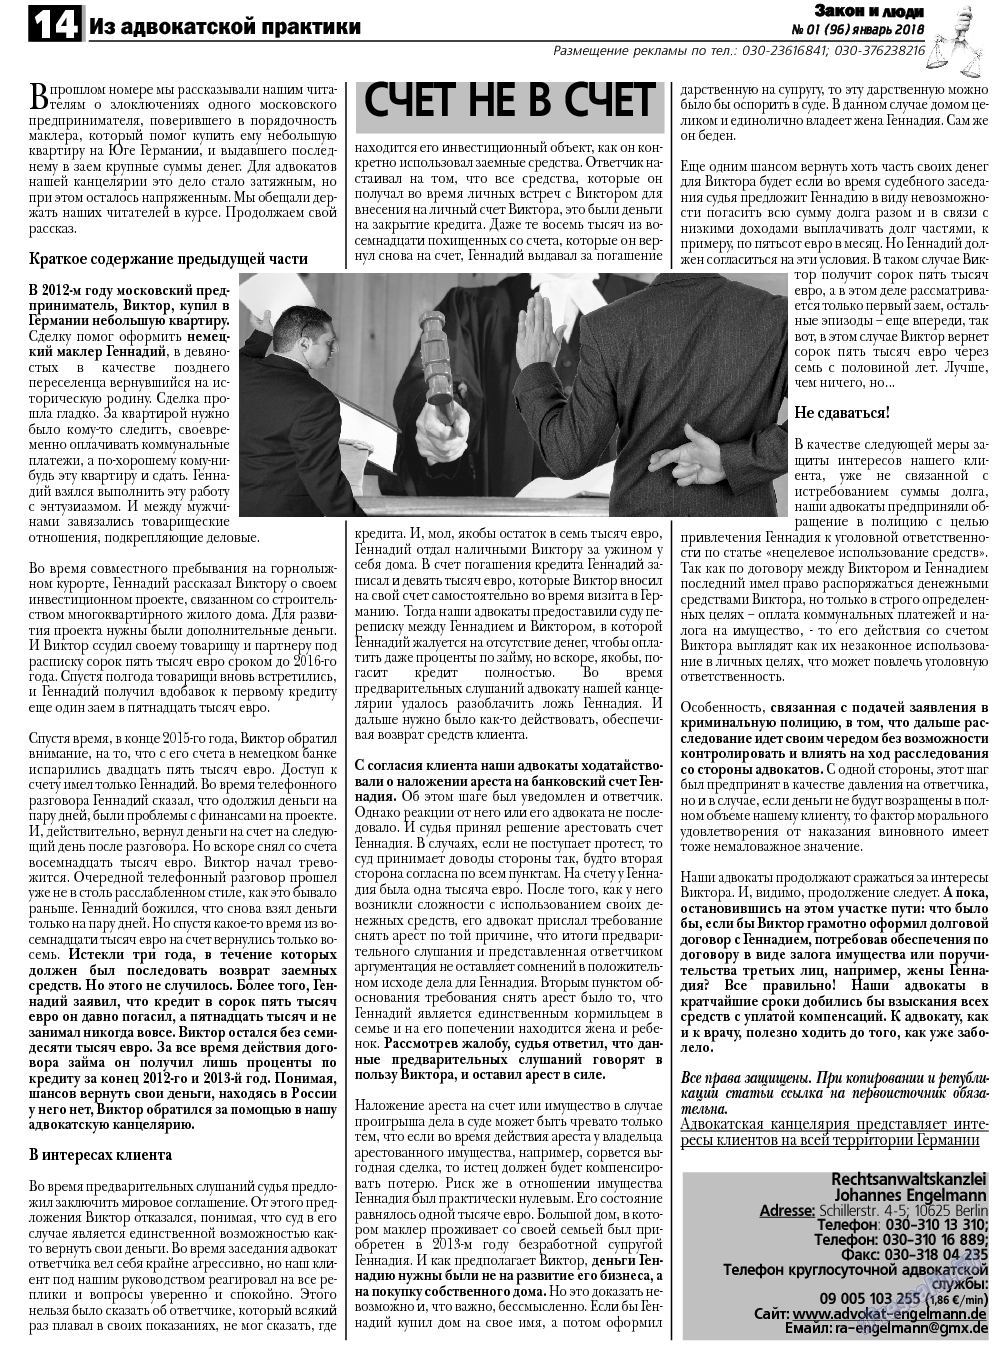 Закон и люди, газета. 2018 №1 стр.14